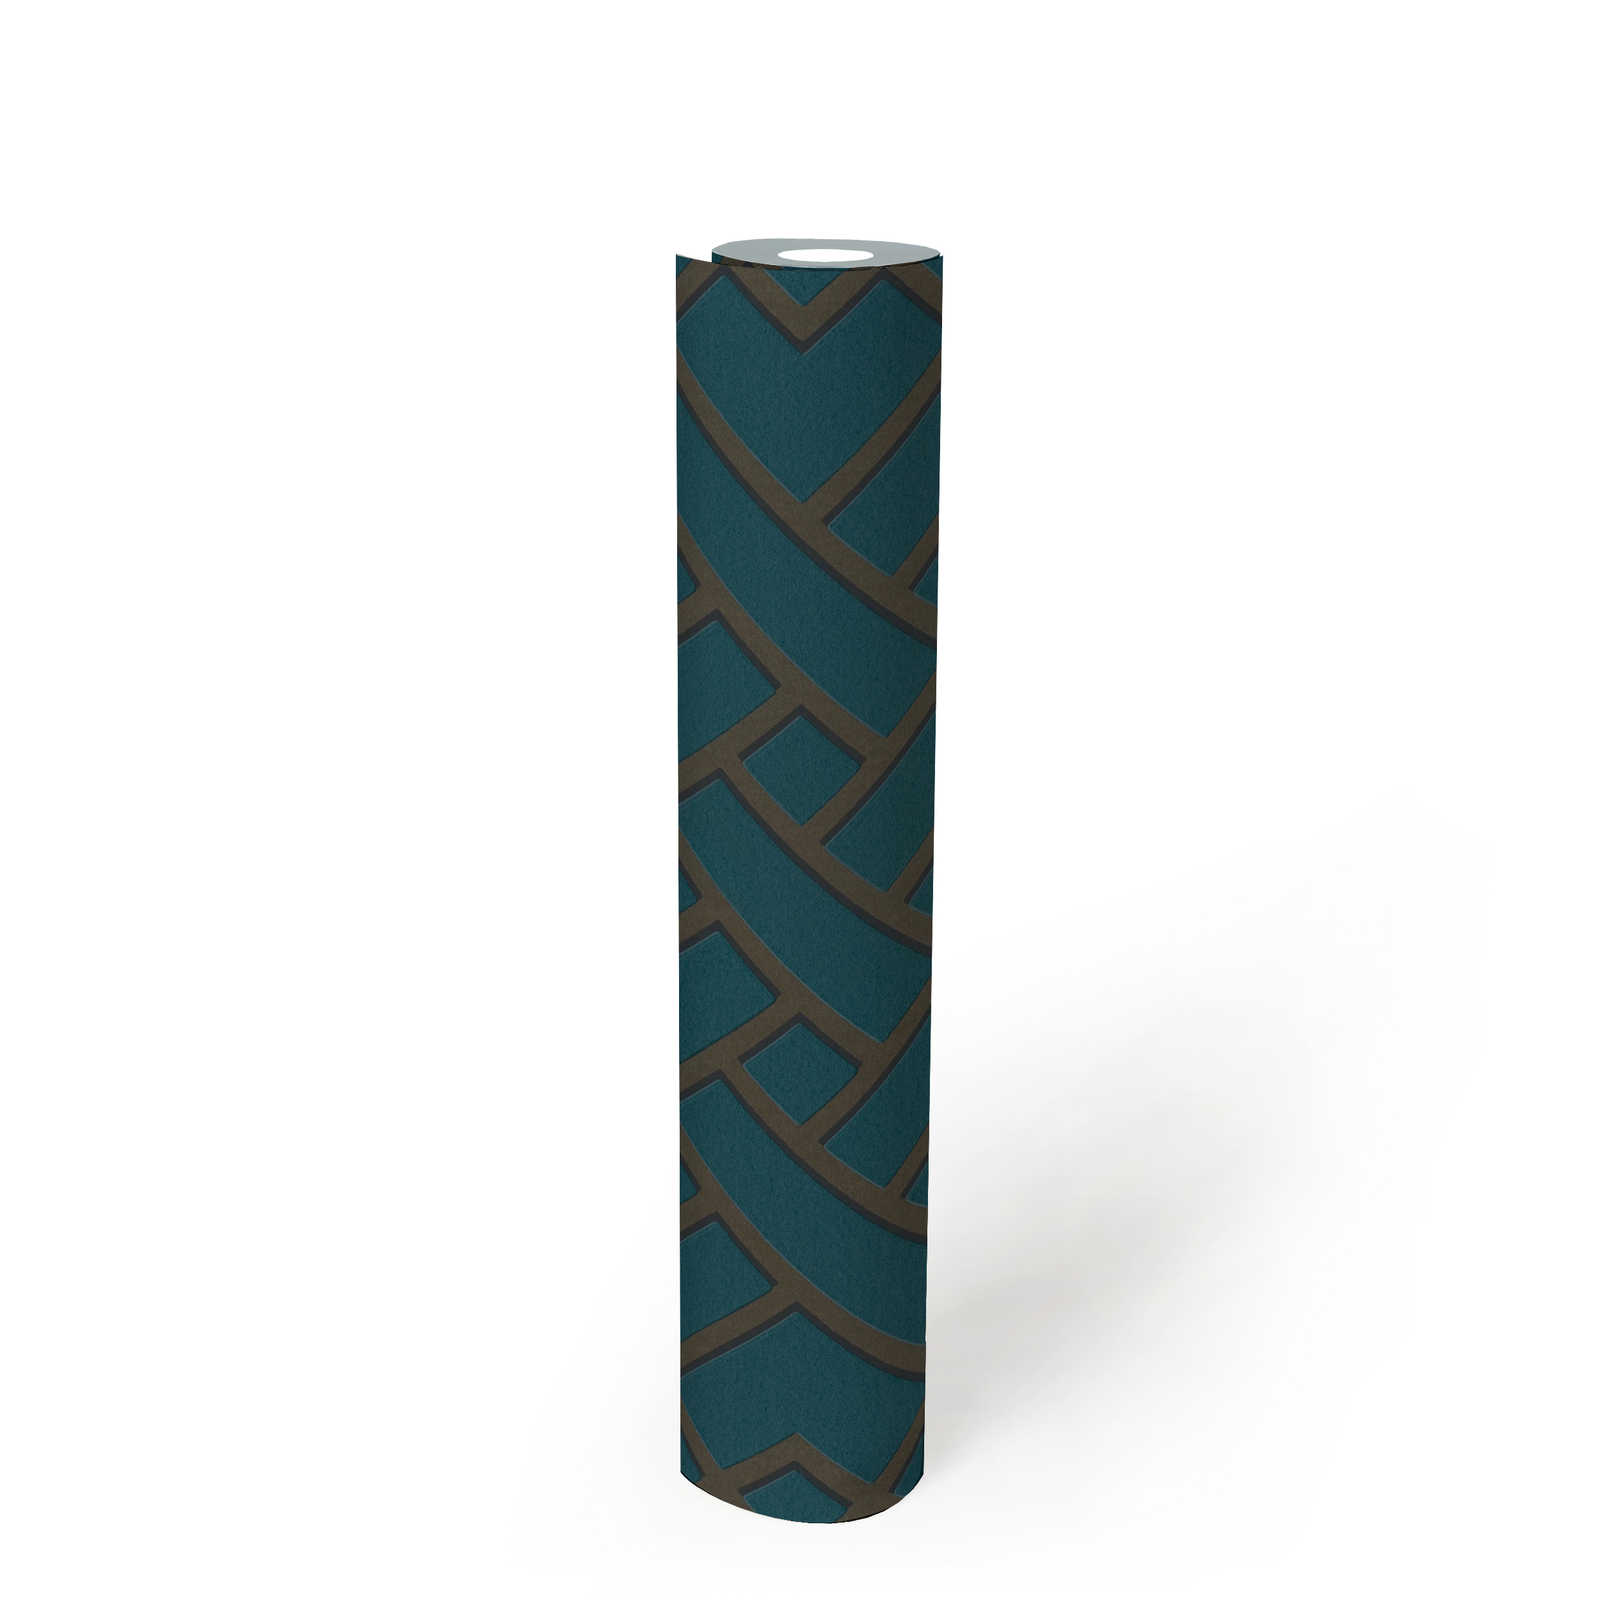             Design Tapete Petrol von MICHALSKY mit 3D Muster – Grün, Metallic
        